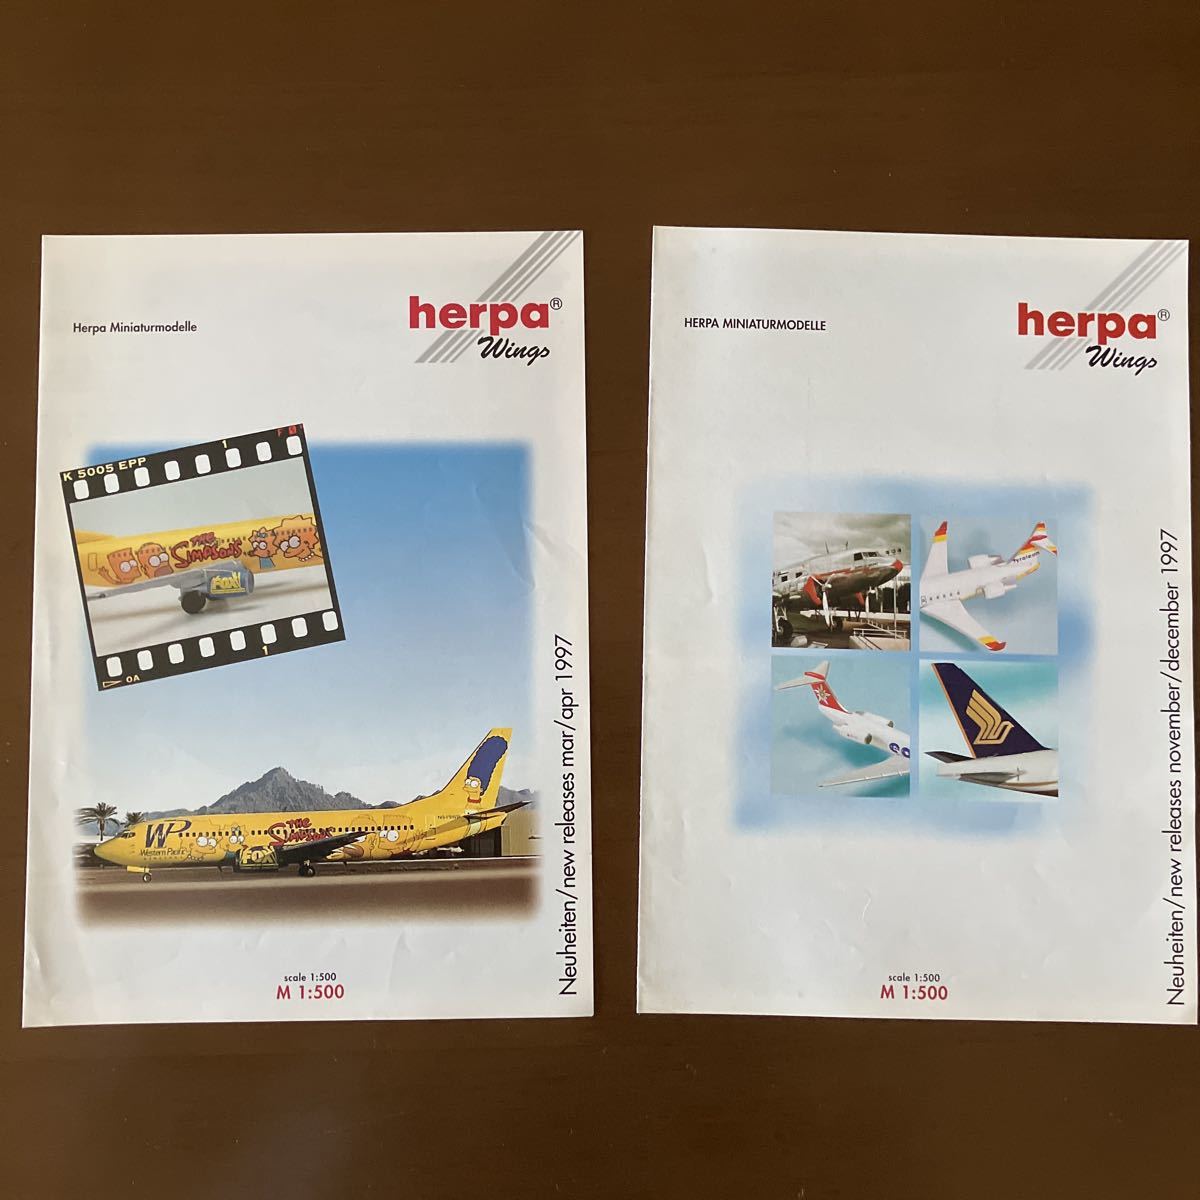 herpa Herpa wings 1997 airplane model pamphlet mar/apr 1997, november/december 1997